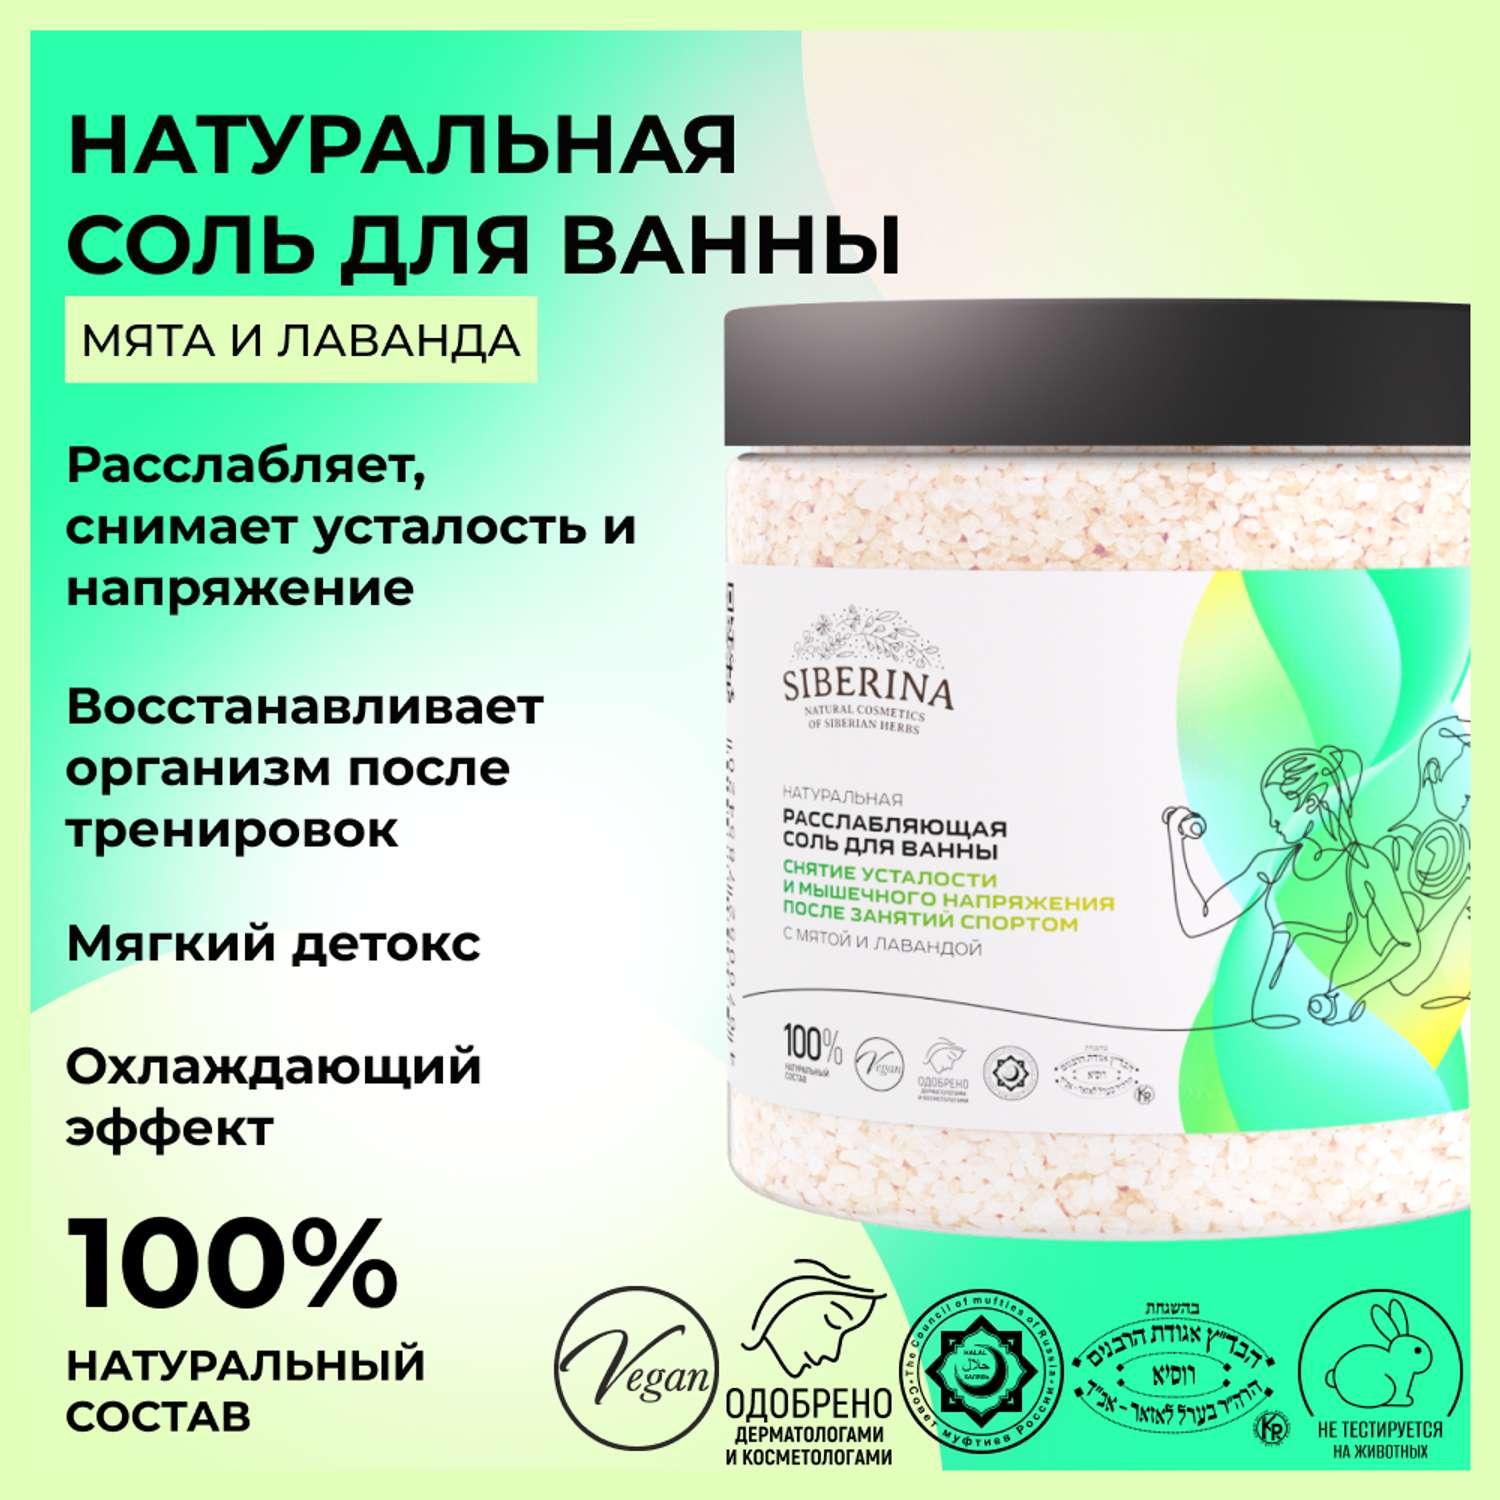 Соль для ванны Siberina натуральная «Снятие усталости и мышечного напряжения» морская расслабляющая 600 г - фото 2